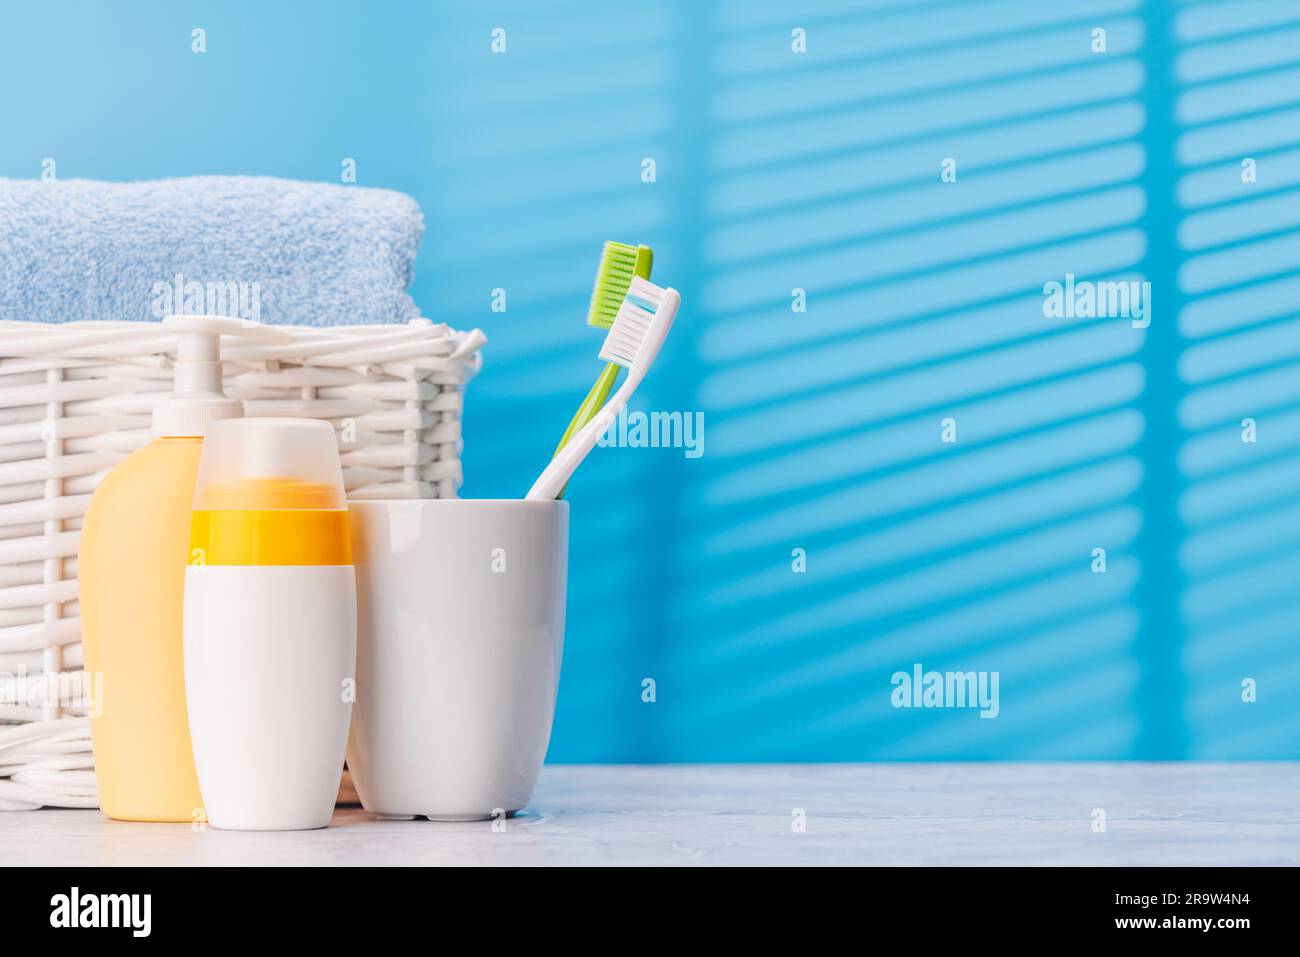 Un'immagine pulita e rinfrescante con tubi da bagno e spazzolini da denti, che favoriscono l'igiene orale e uno stile di vita sano Foto Stock